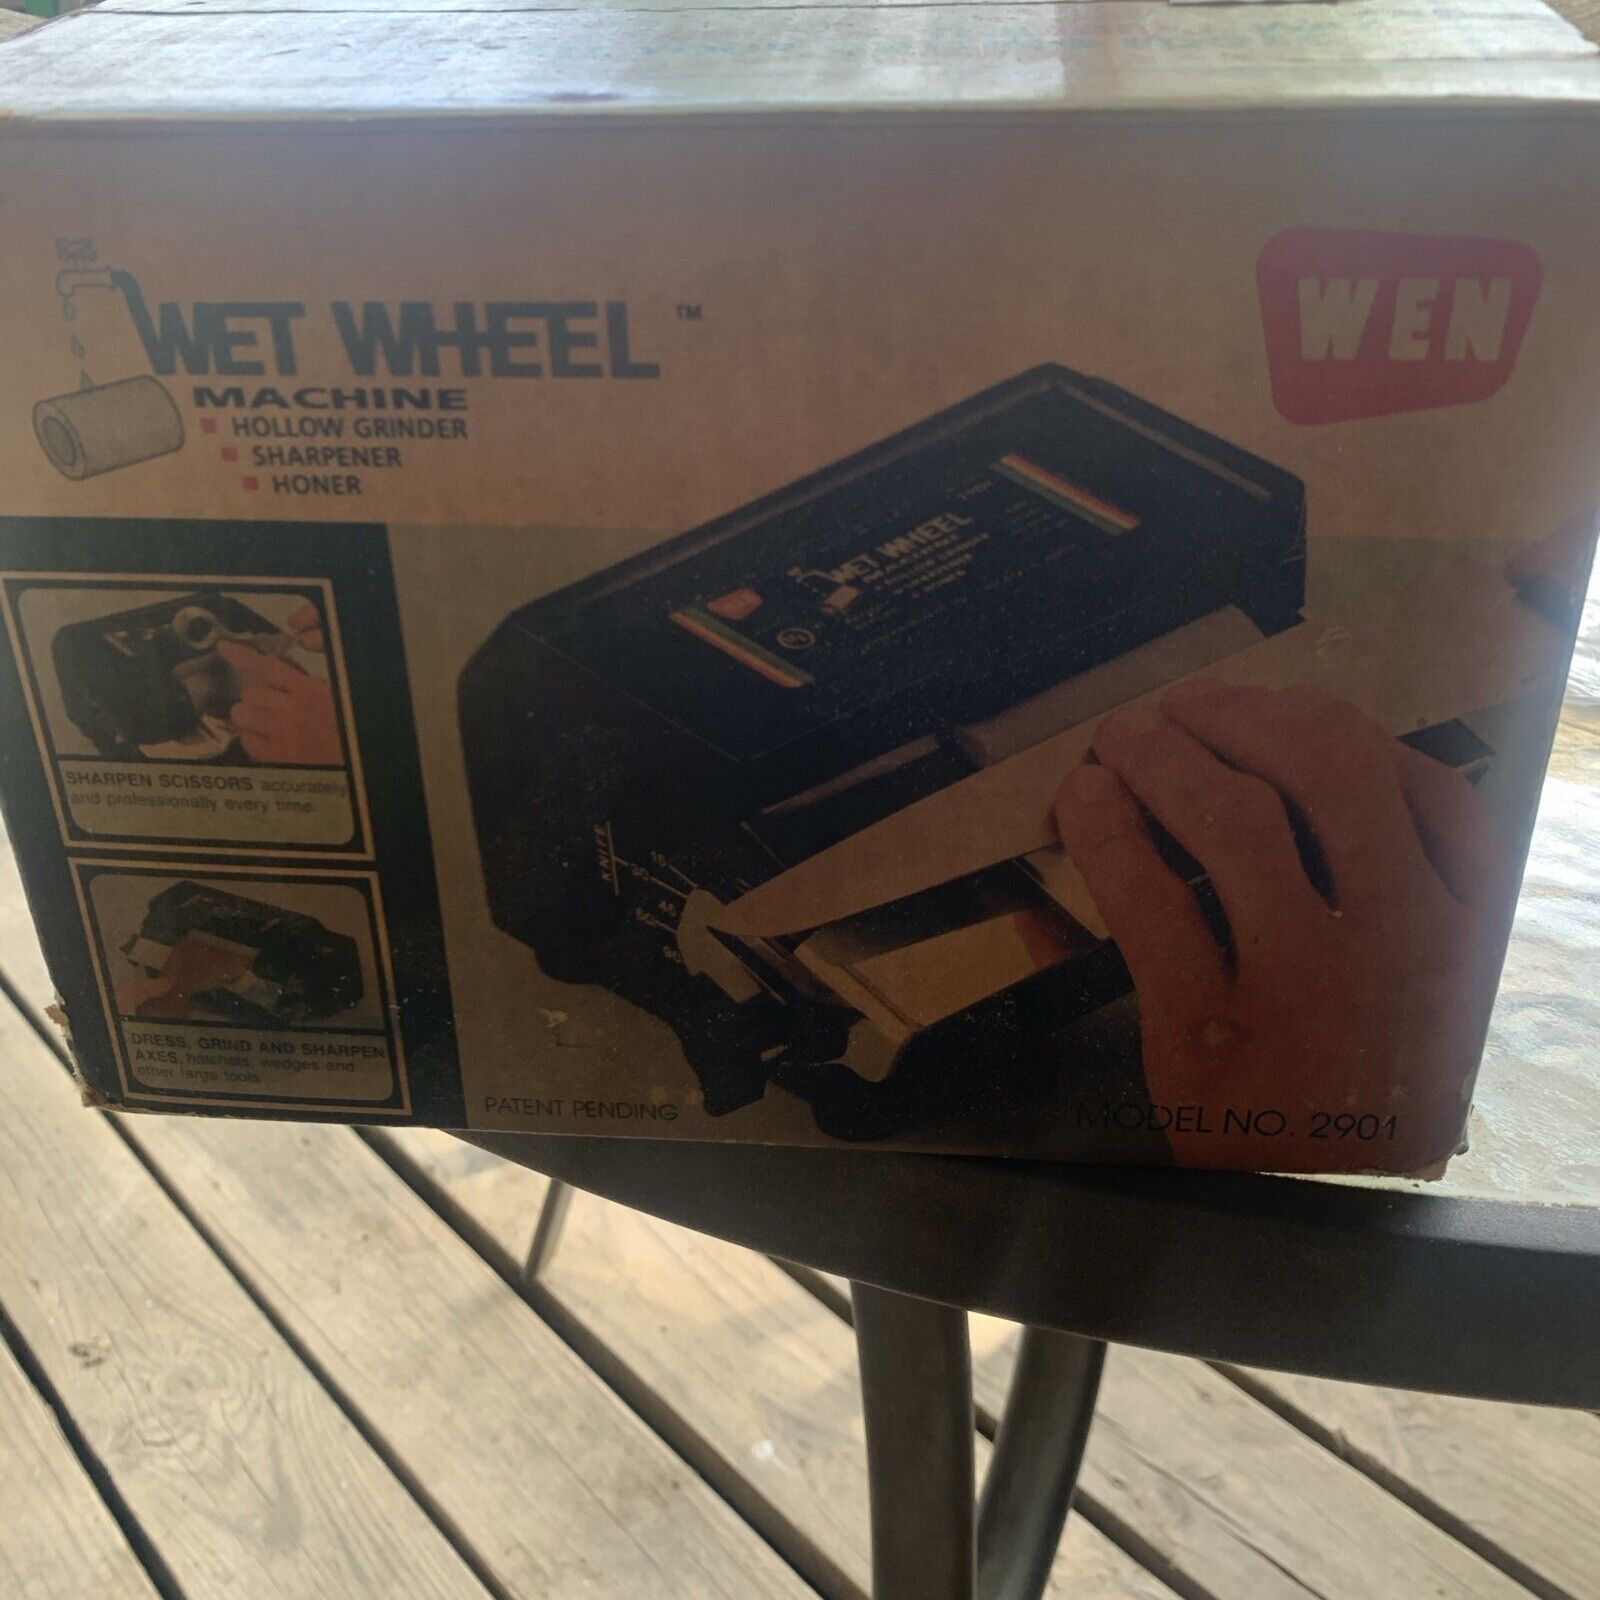 Vintage Wen Wet Wheel Machine Model 2901 Sharpener Hollow Grinder Tested